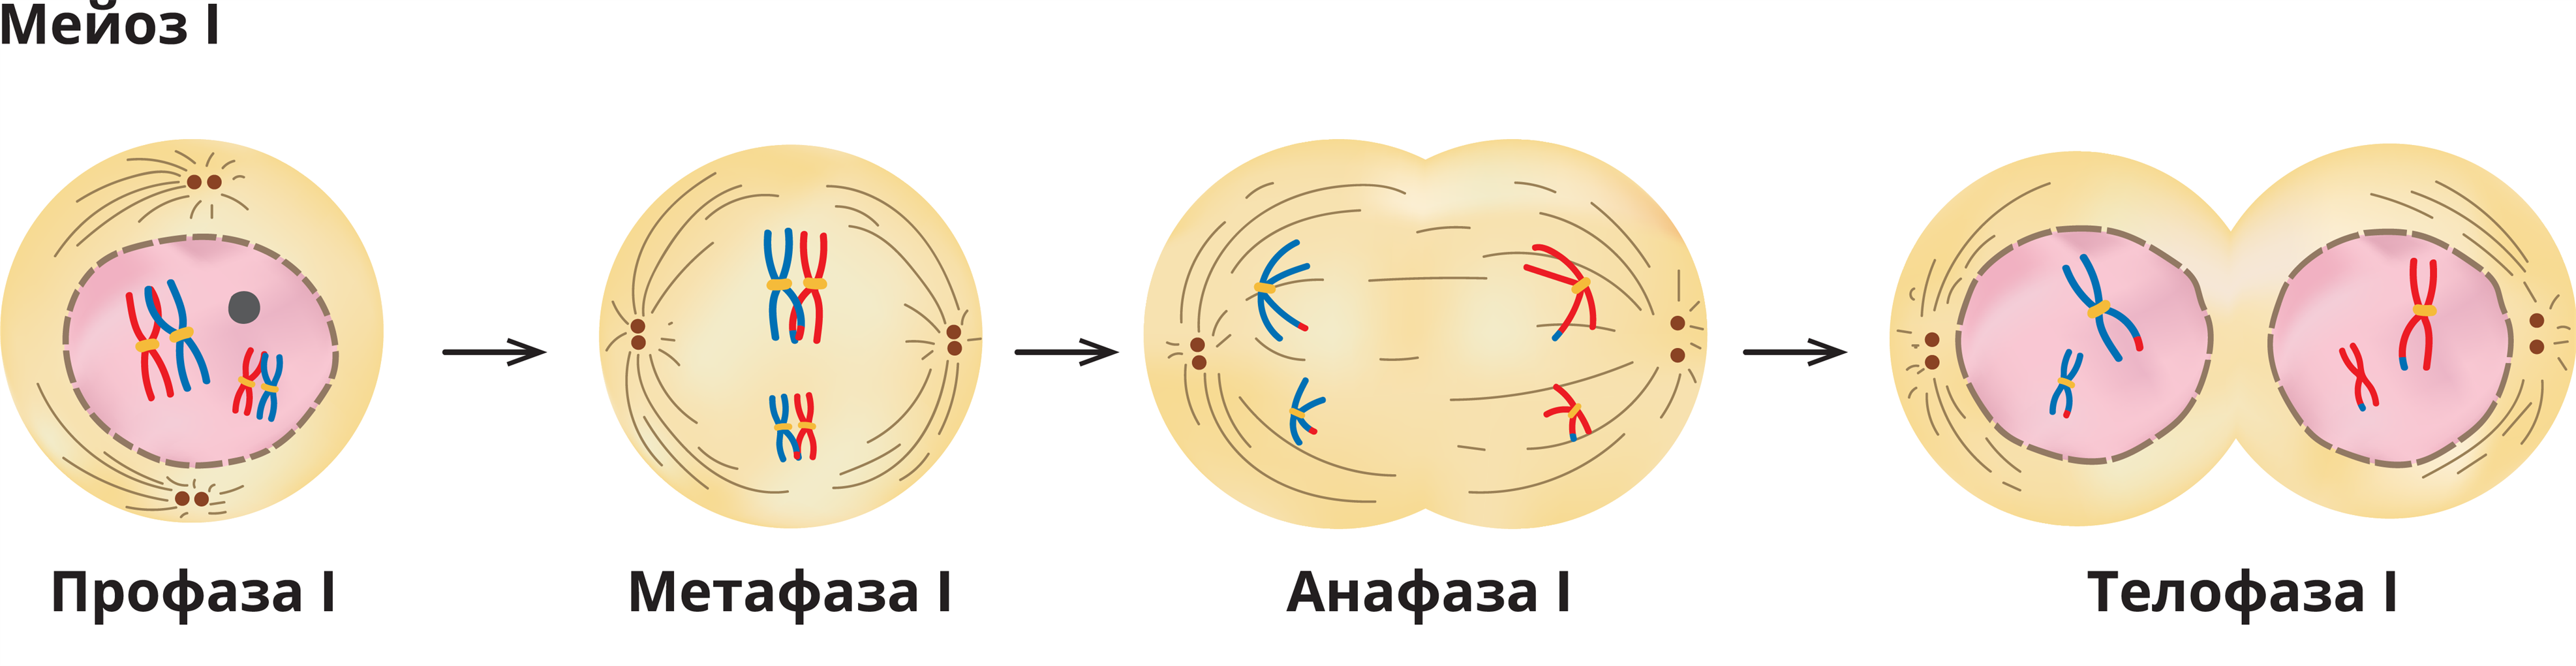 Набор хромосом в телофазе мейоза 1. Митоз интерфаза 2n2c. Профаза 1 хромосомы. Профаза 1 и профаза 2. Телофаза мейоза 1.